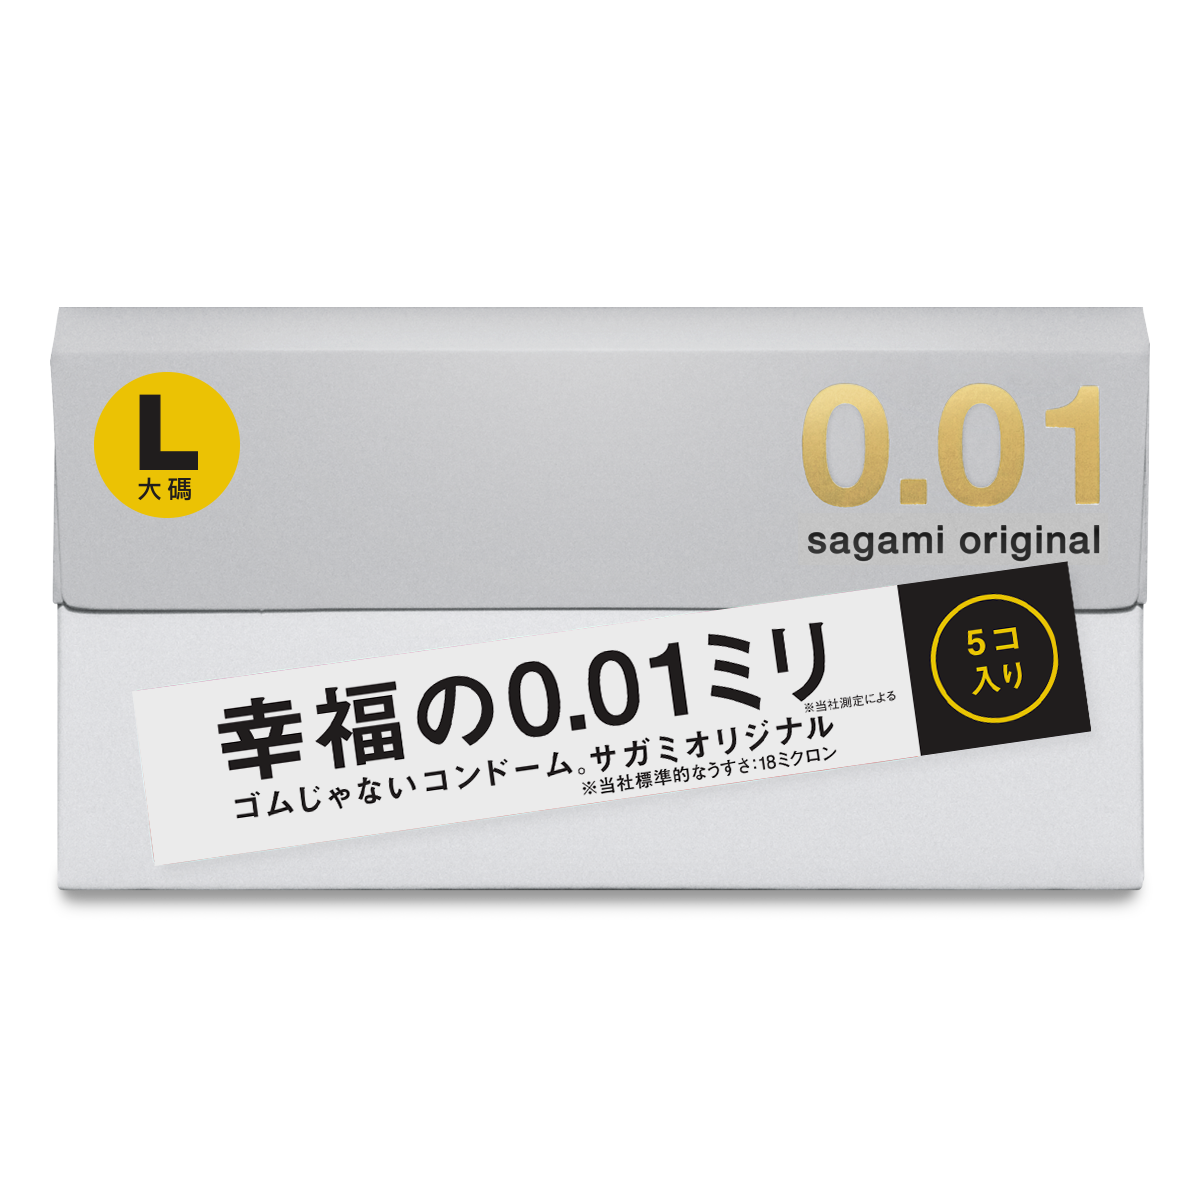 Полиуретановые презервативы Sagami Original 0.01 L-size - 5 шт.